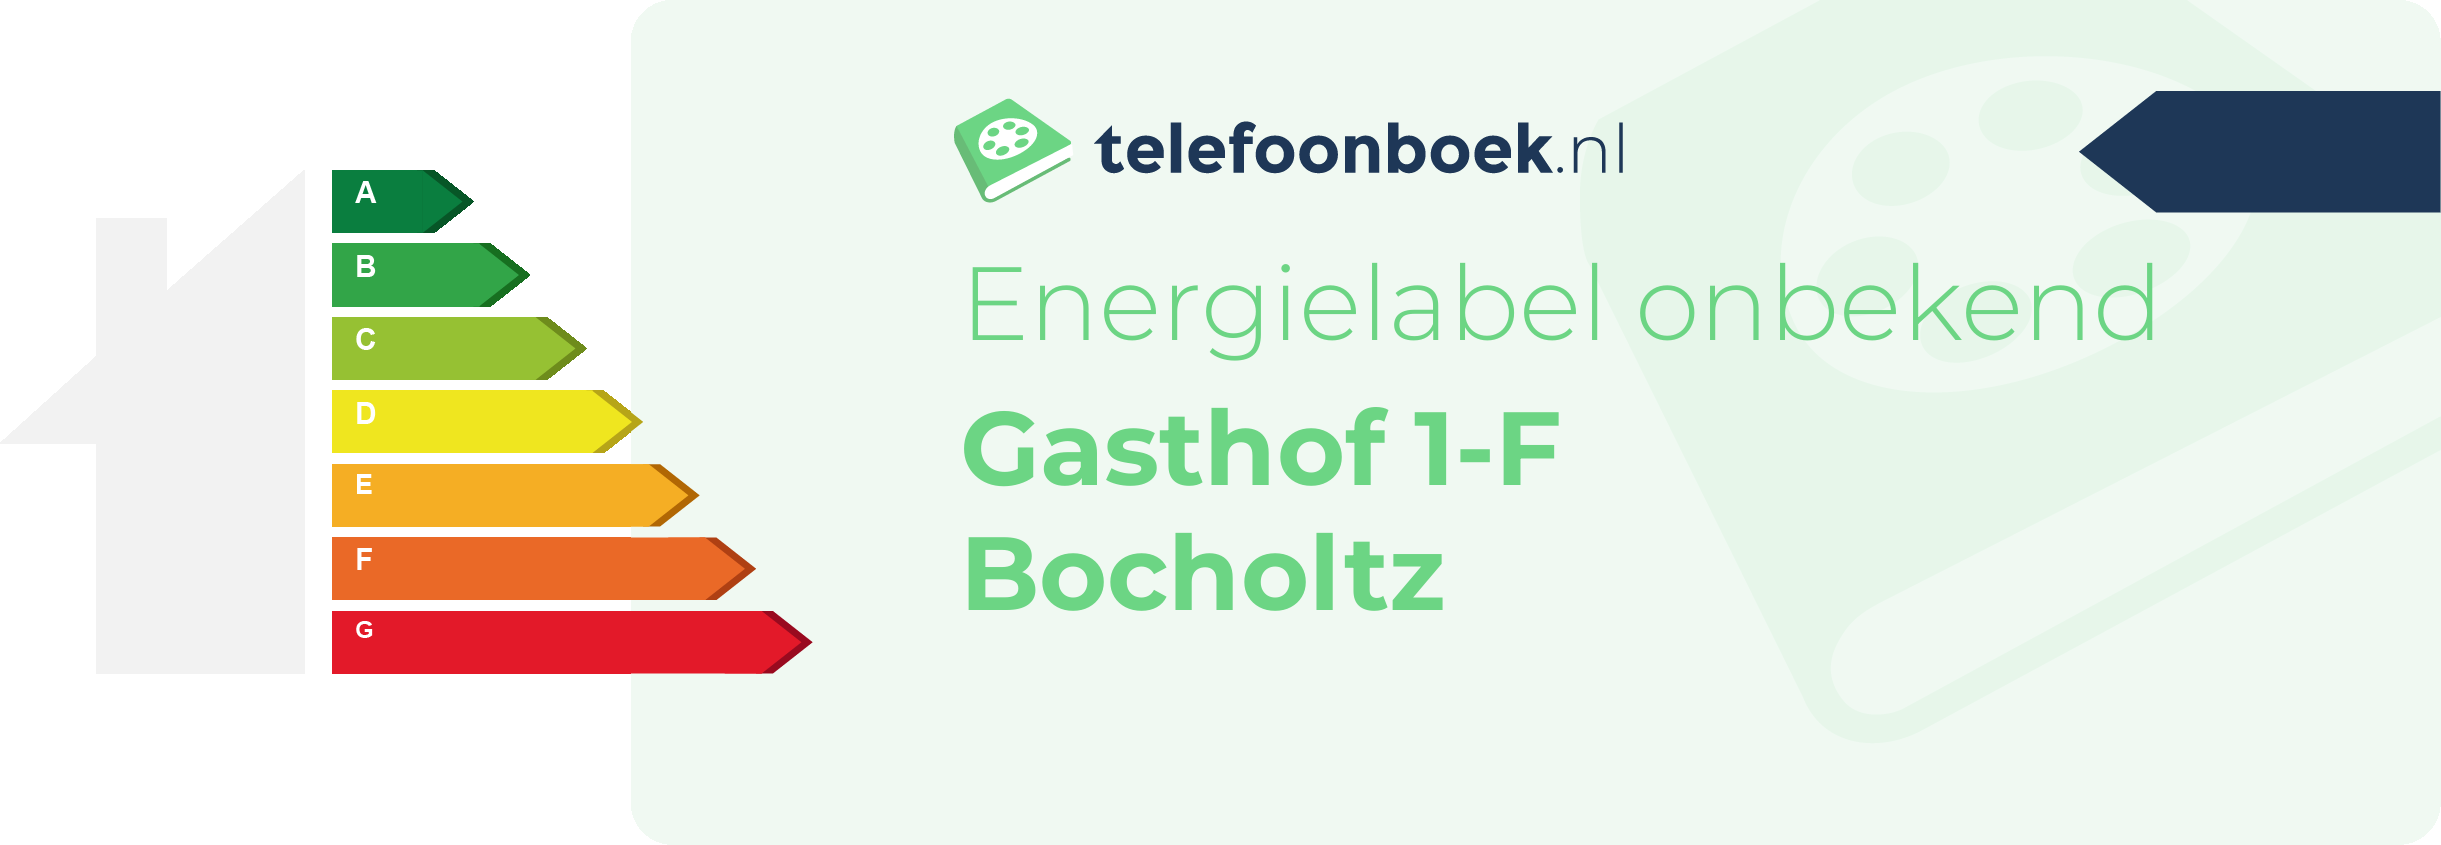 Energielabel Gasthof 1-F Bocholtz